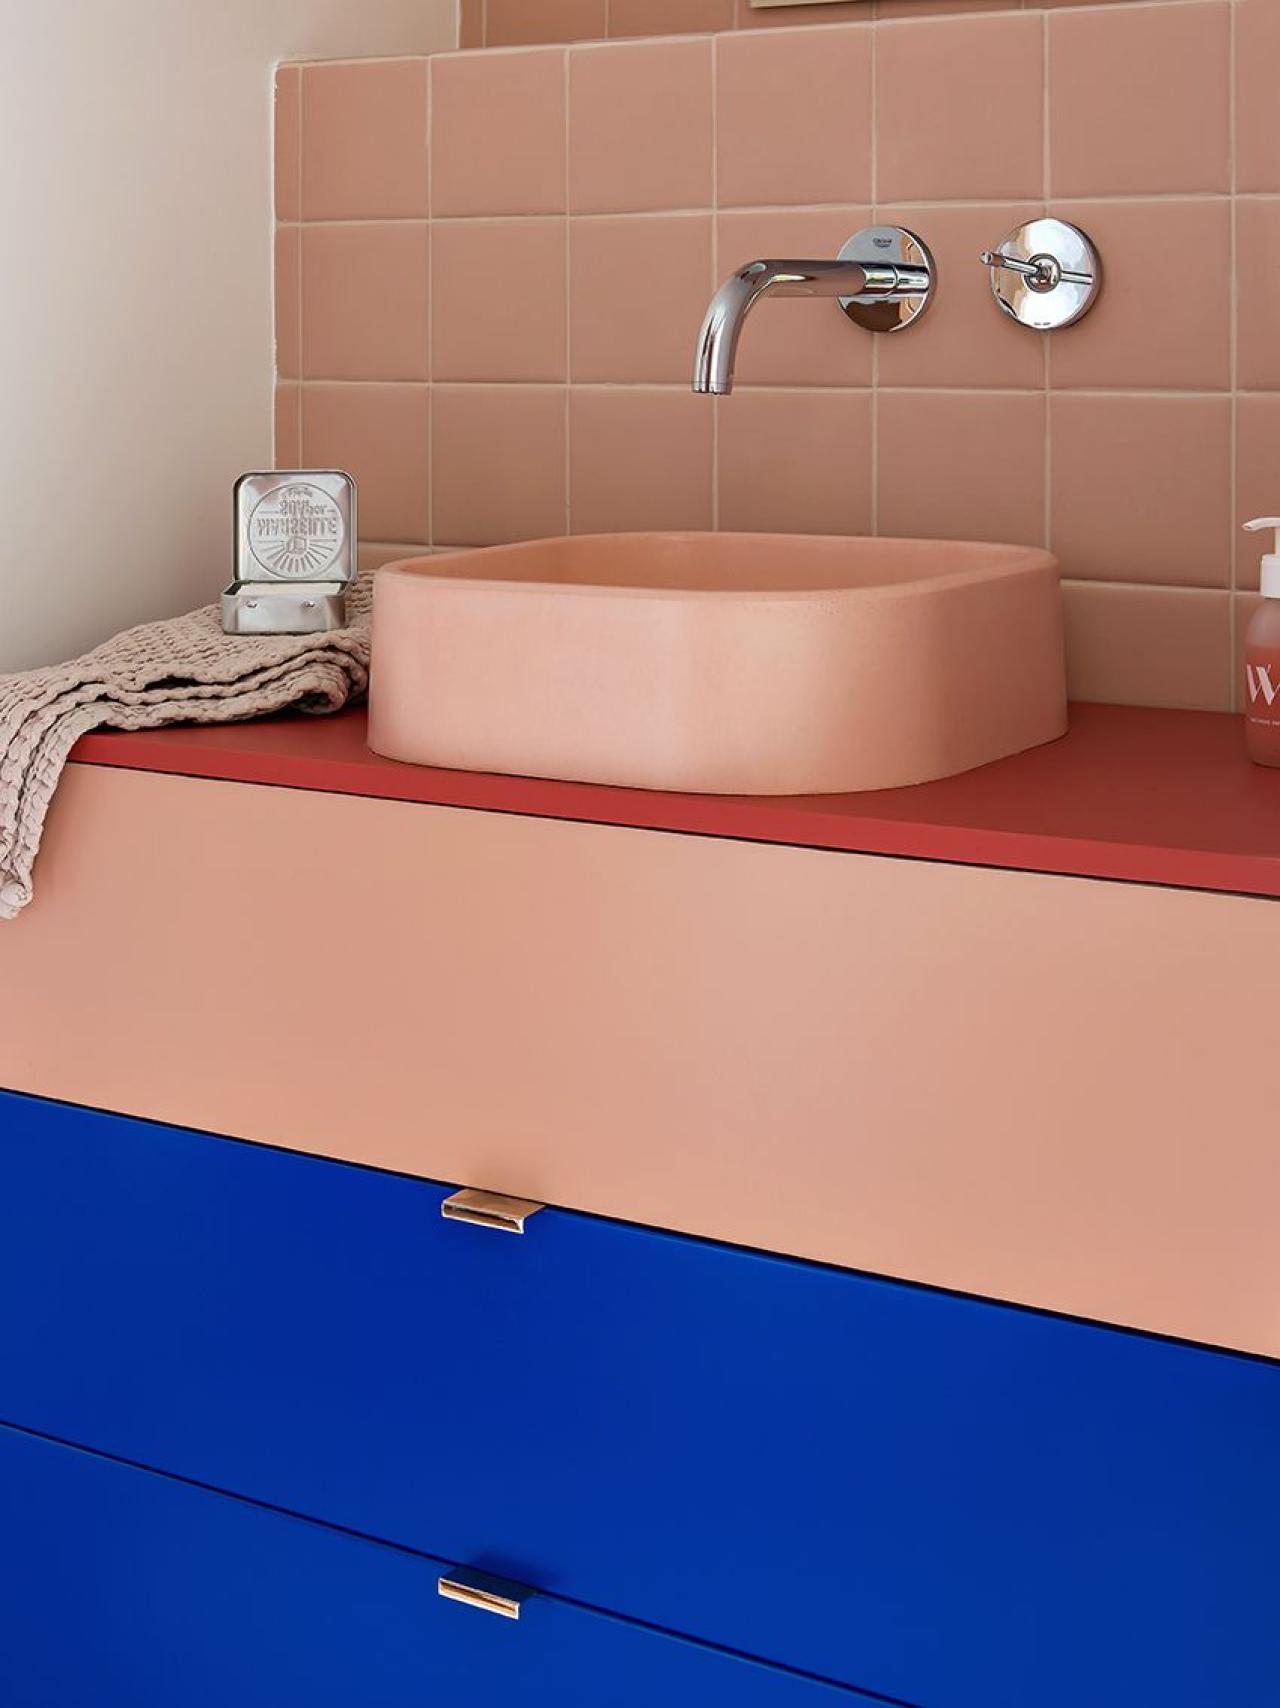 Ein farbenfrohes Bad in Electric und Blush